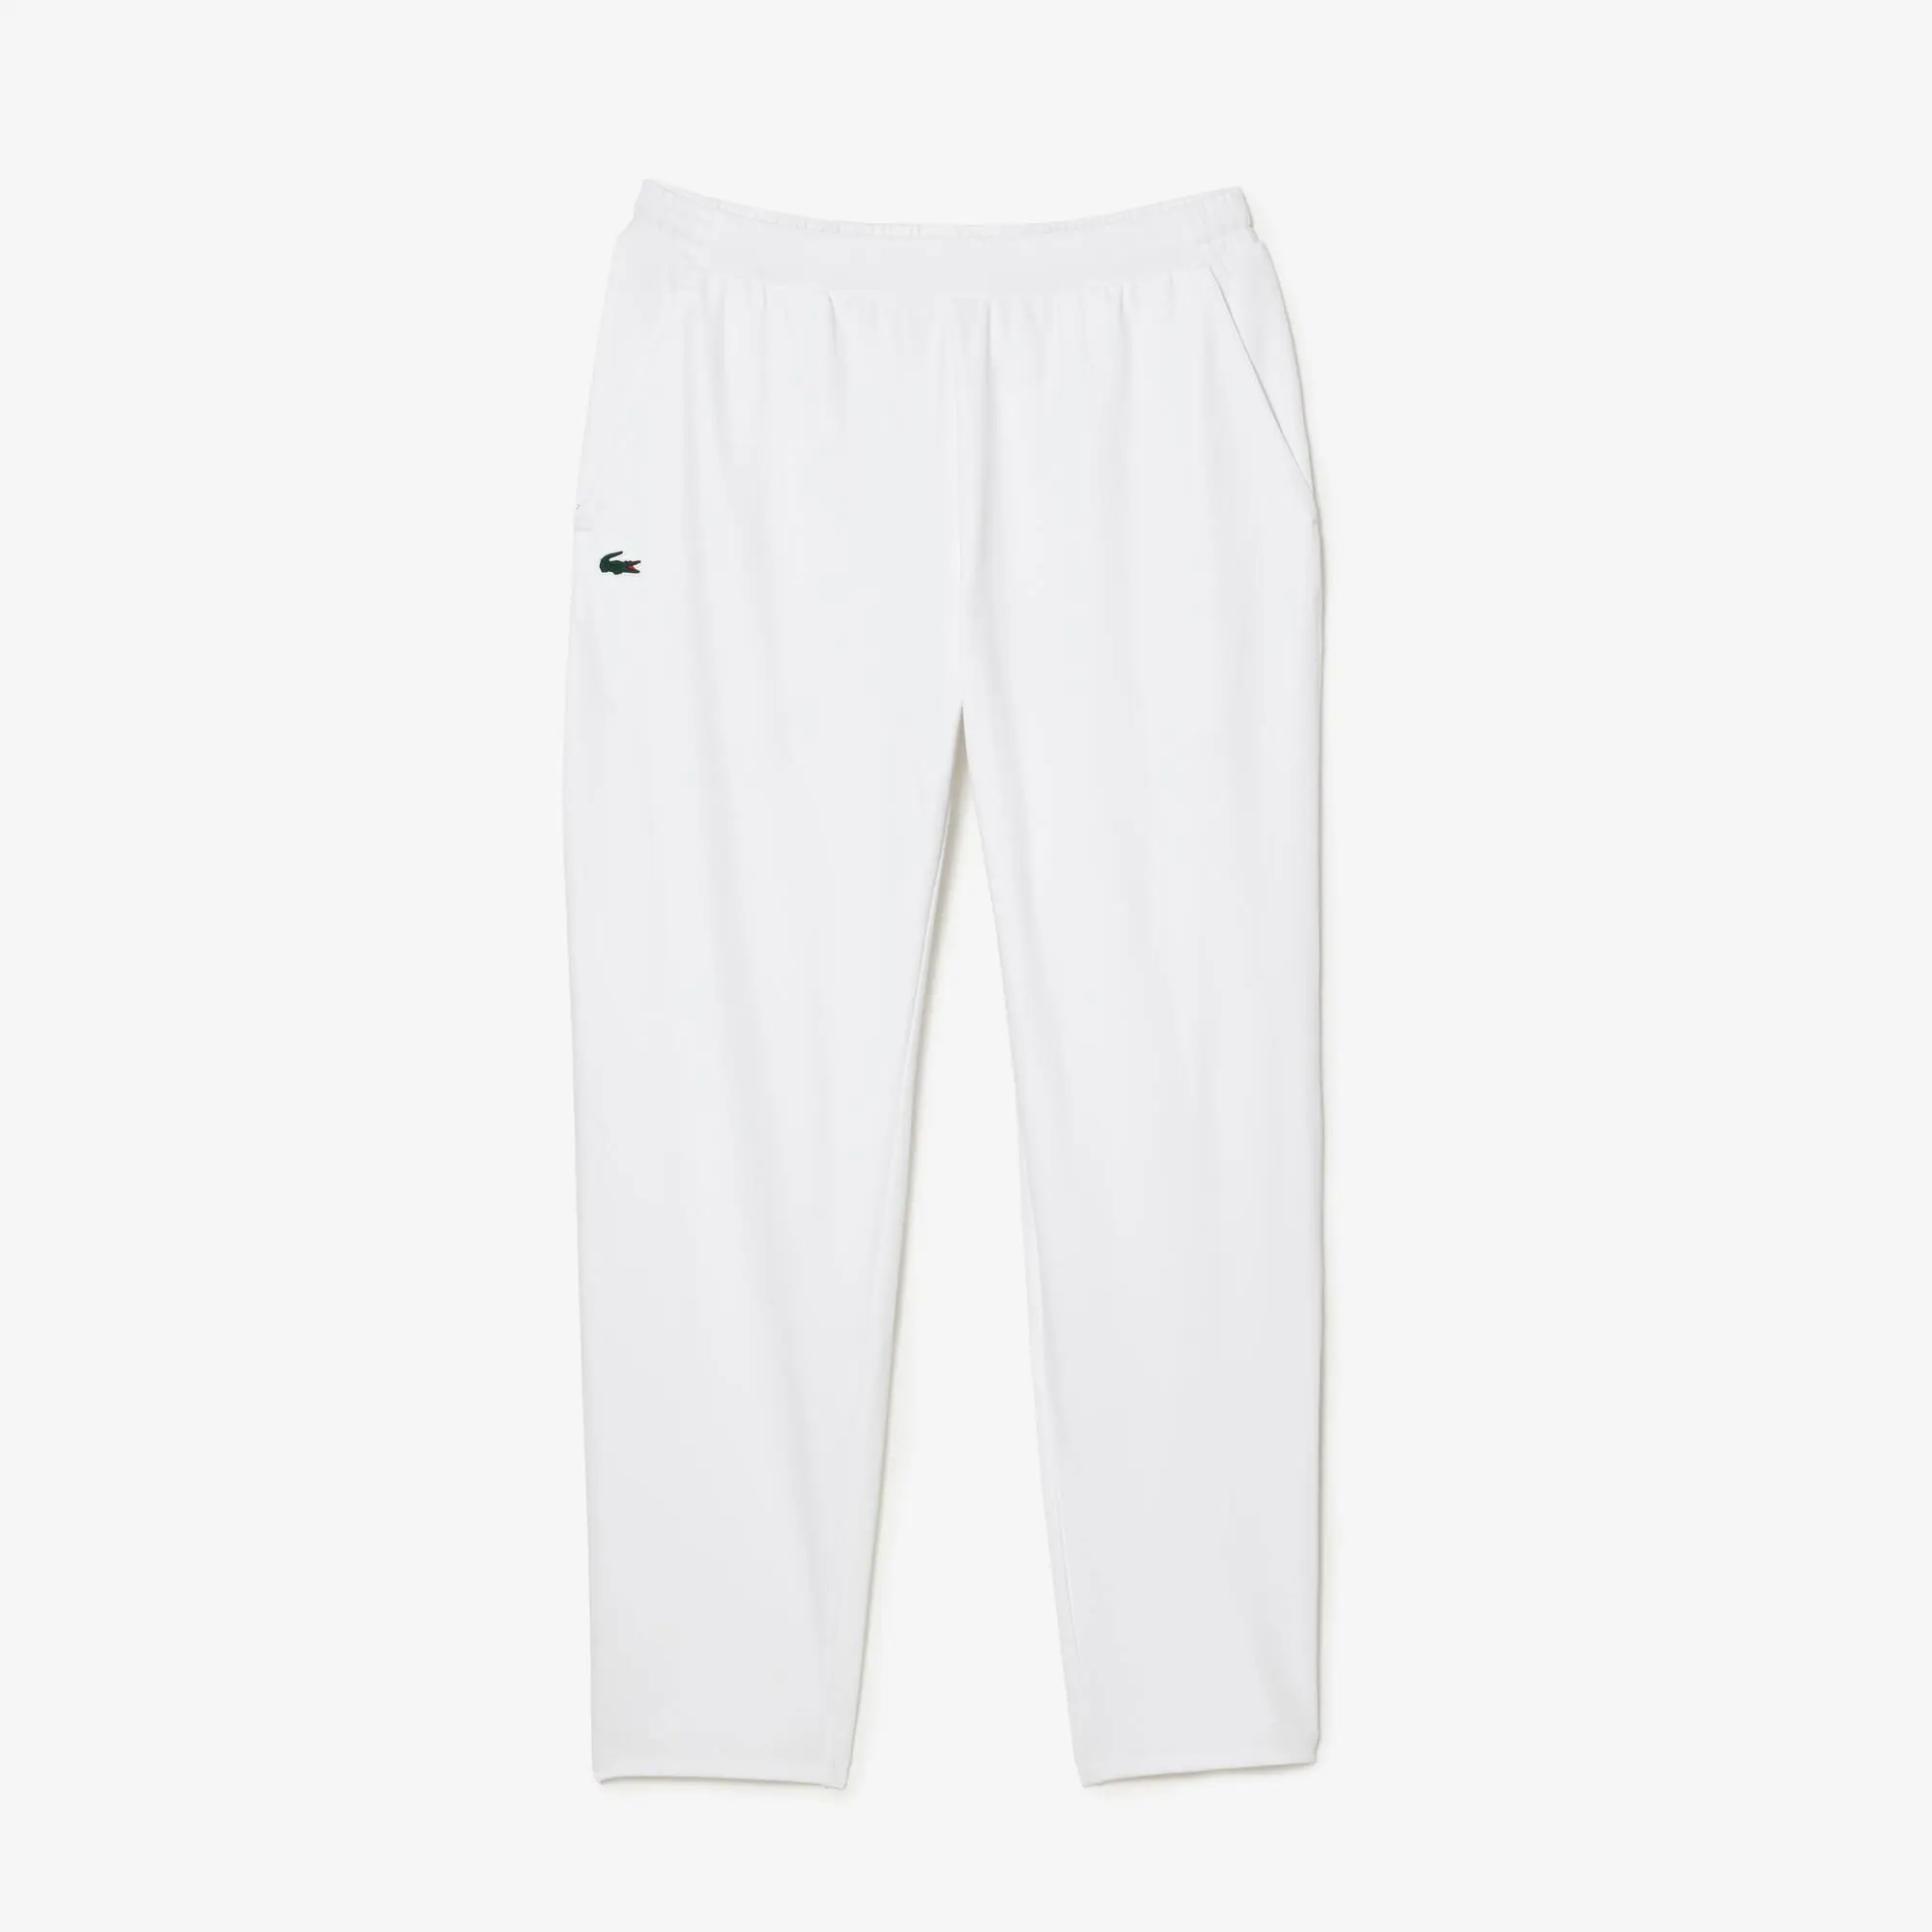 Lacoste Pantaloni della tuta da tennis elasticizzati. 2